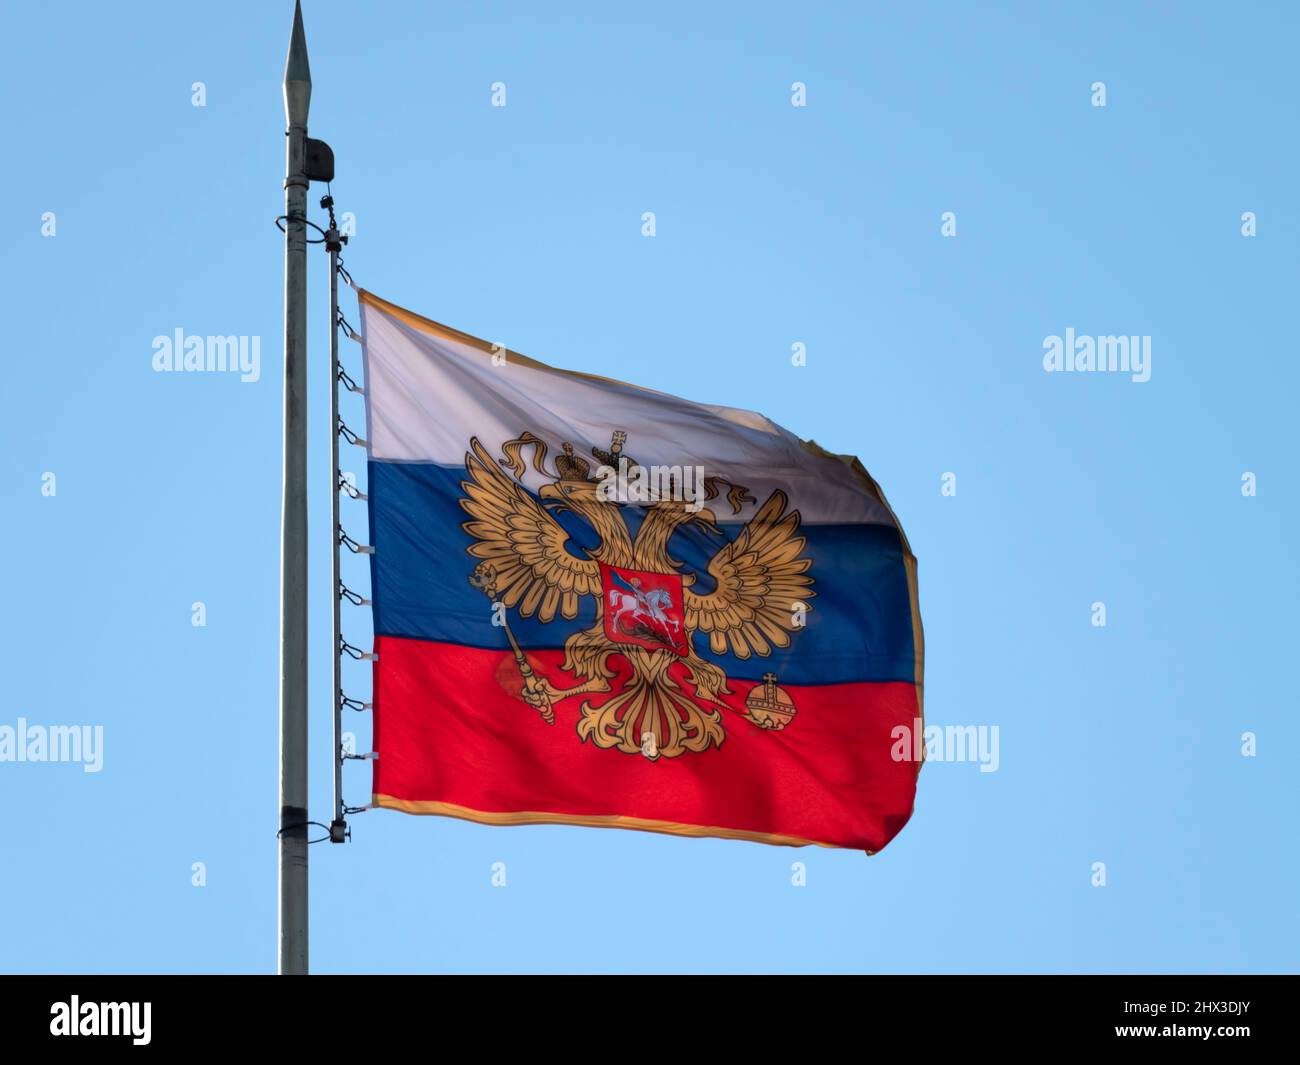 Kreml Moskau Kuppel des Senats Gebäude russische Flagge Tower. Stockfoto